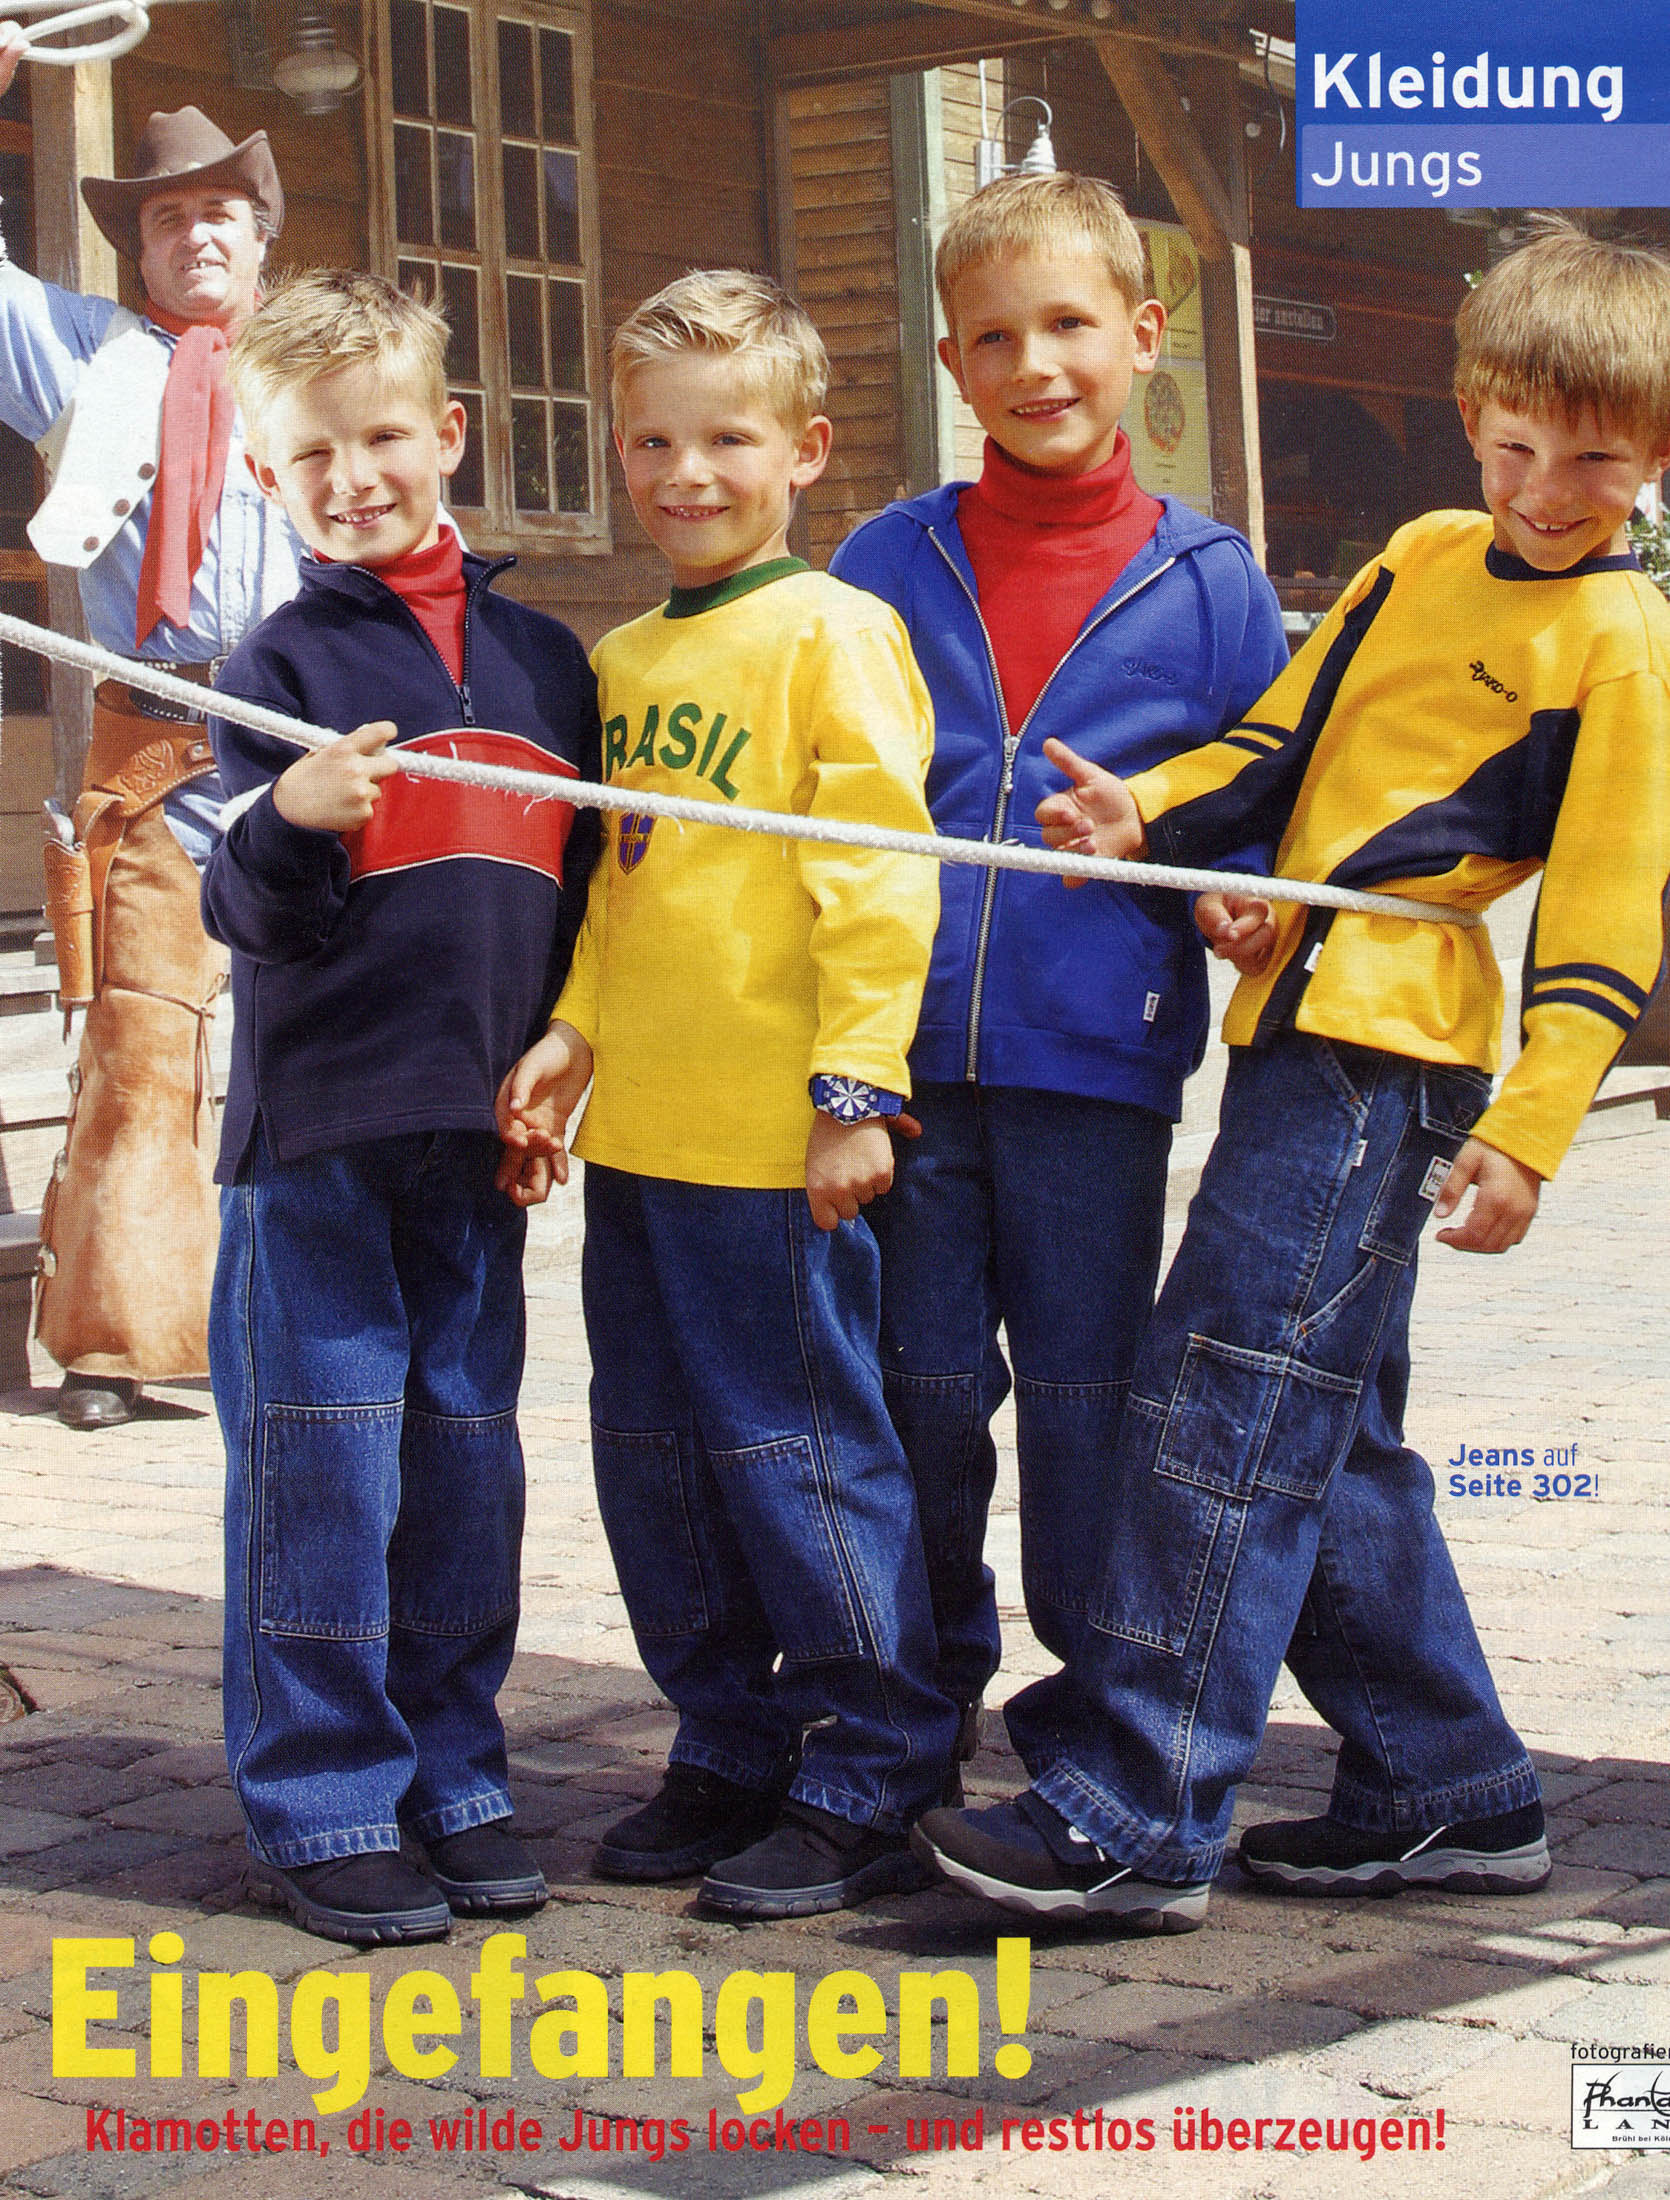 Vier junge Jungen spielen Tauziehen auf einer gepflasterten Straße, im Hintergrund achtet ein Erwachsener auf sie. Sie tragen farbenfrohe, legere Kleidung und wirken fröhlich. Der Text „Eingefangen! Kleidung Jungs“ fällt auf. © Fotografie Tomas Rodriguez